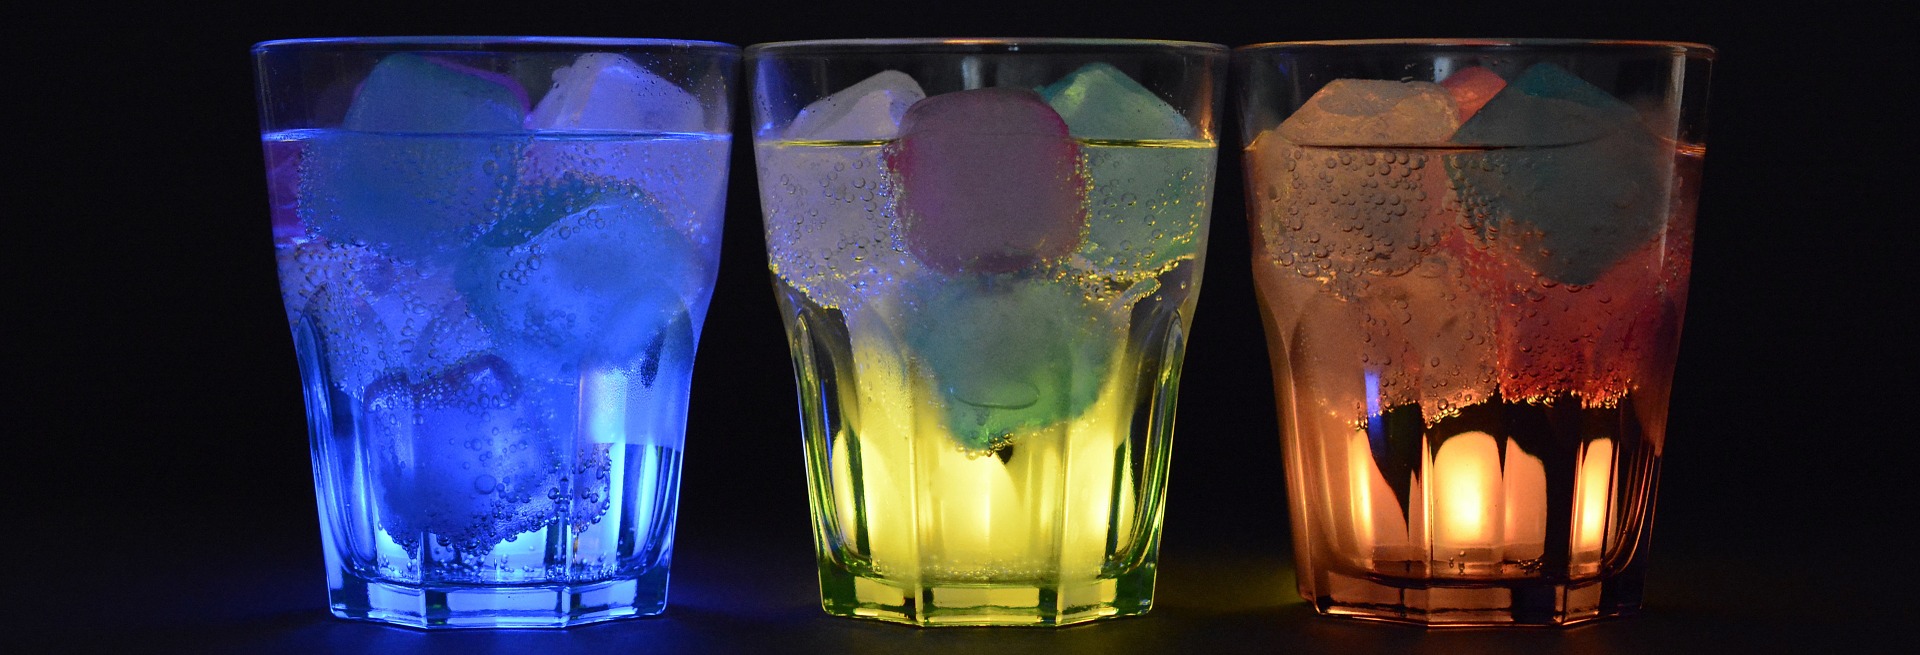 Drei Gläser mit bunten Drinks